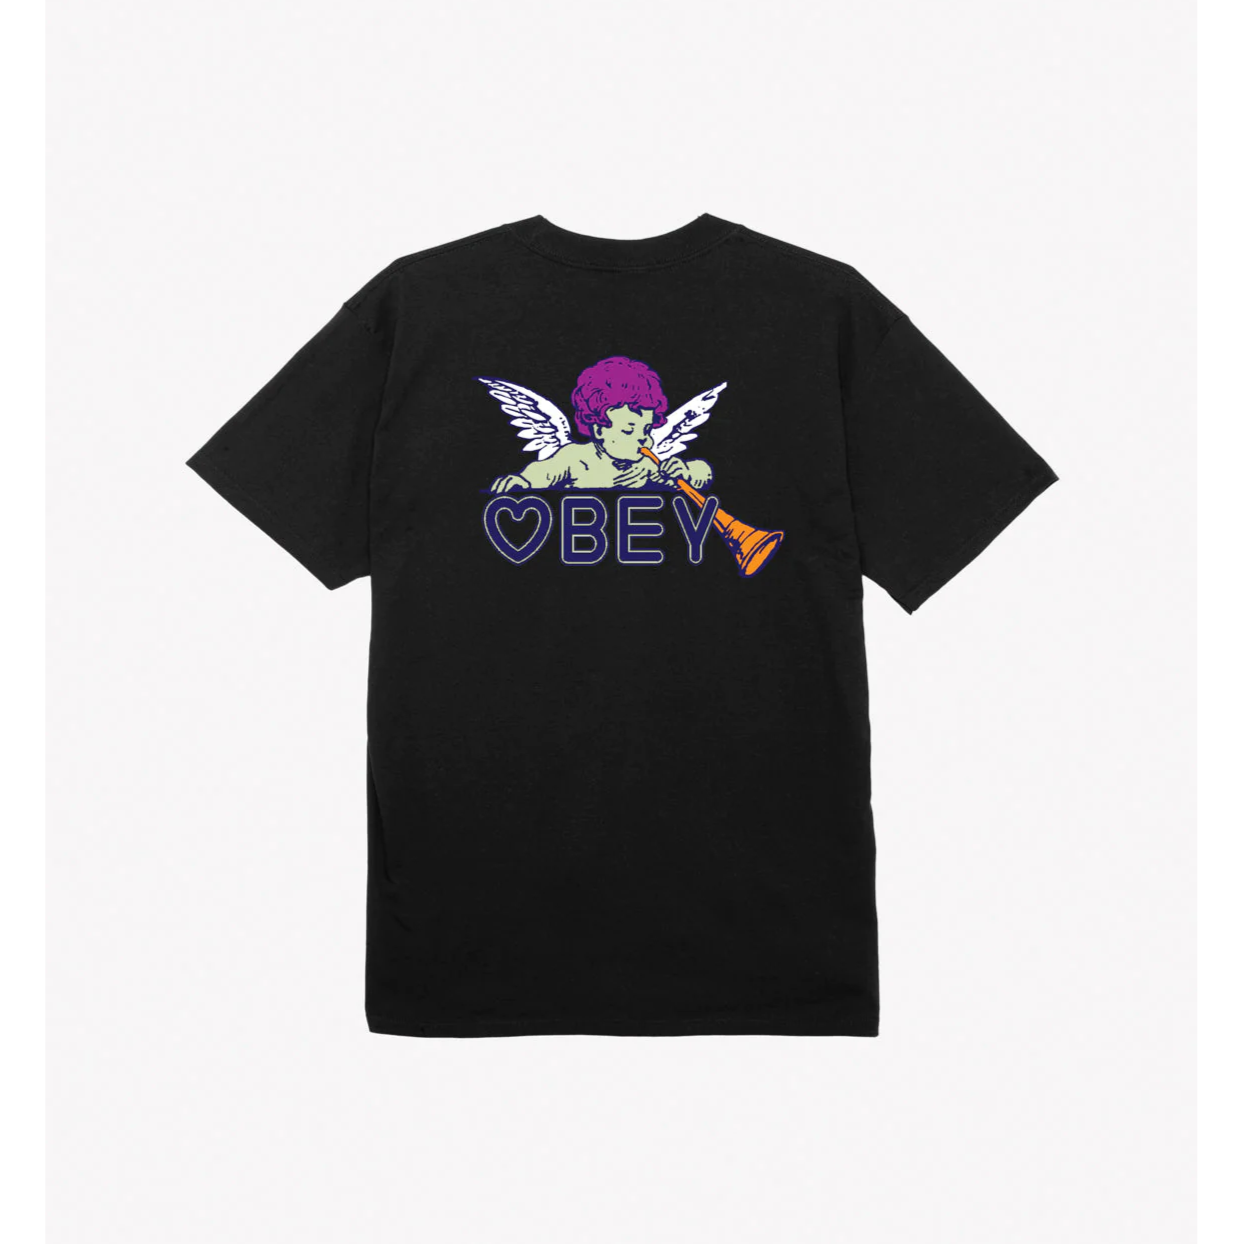 Obey maglietta manica corta da uomo Baby Angel Classic 165263700 nero